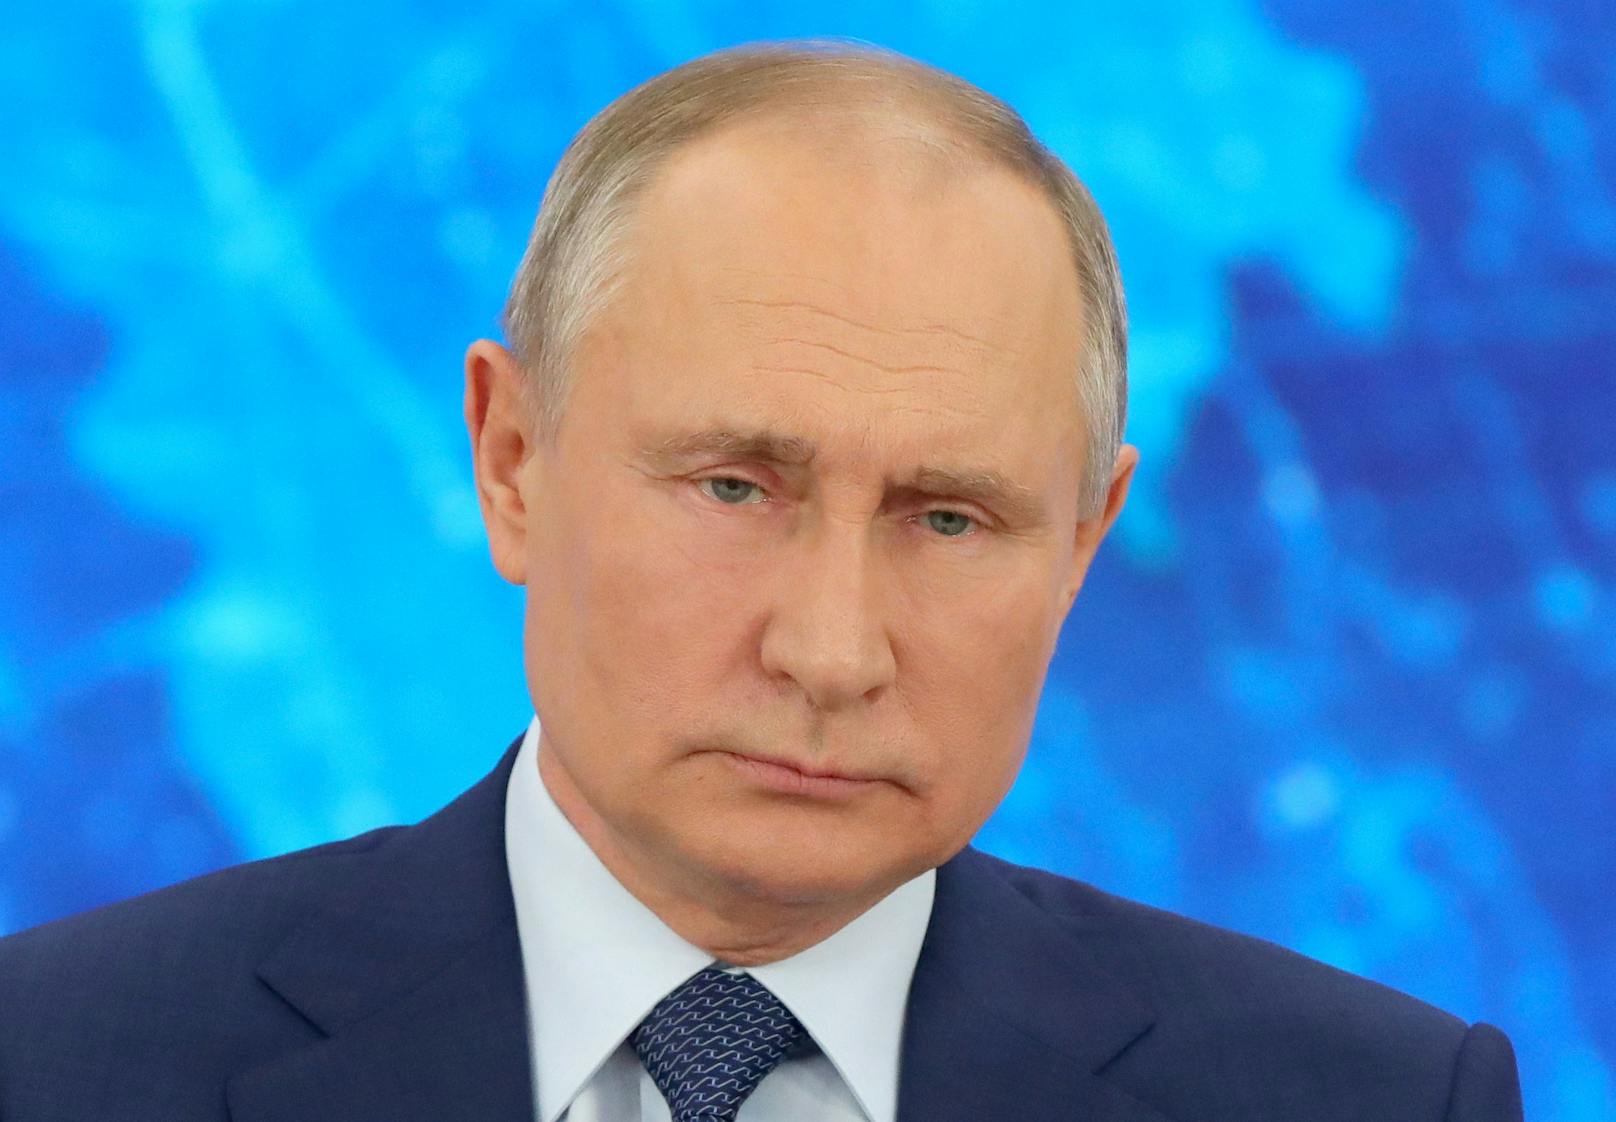 Immer mehr Quellen berichten von fatalen Pannen Putins bei der Ukraine-Invasion.